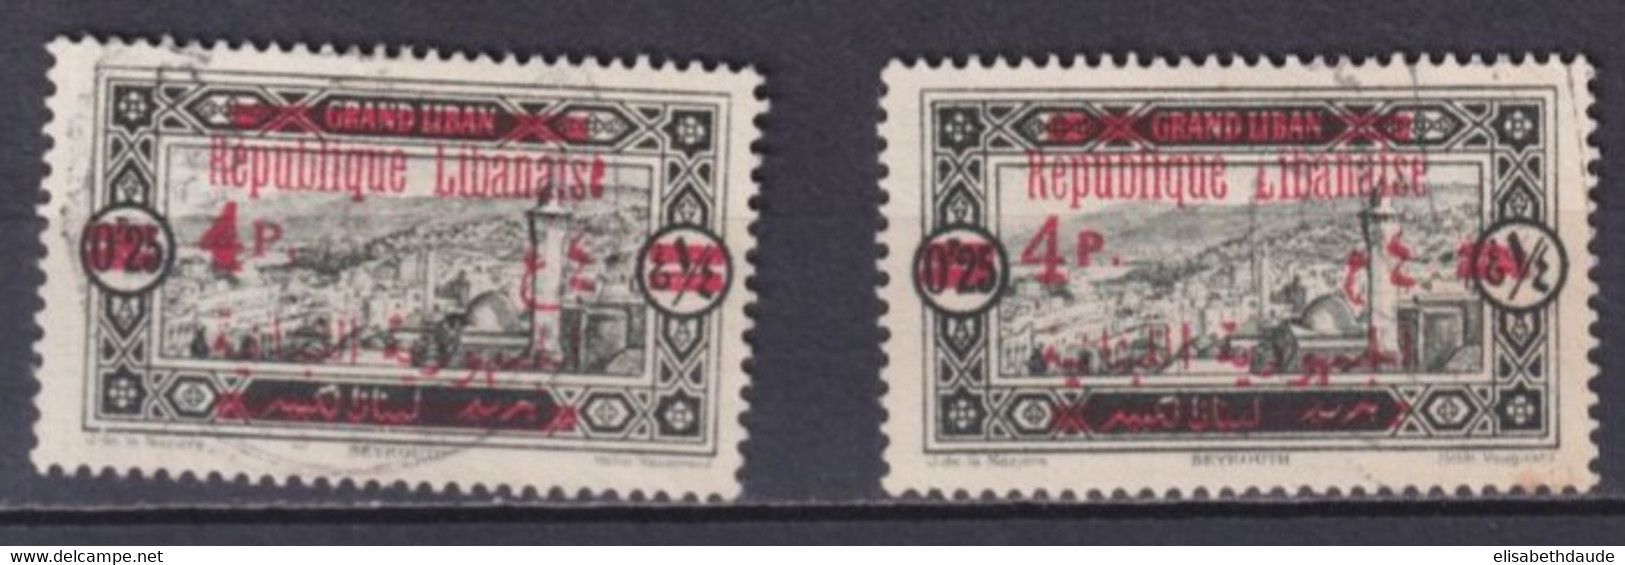 GRAND-LIBAN - 1928 - VARIETE SURCHARGE "4" - YVERT N°119 OBLITERES - - Used Stamps